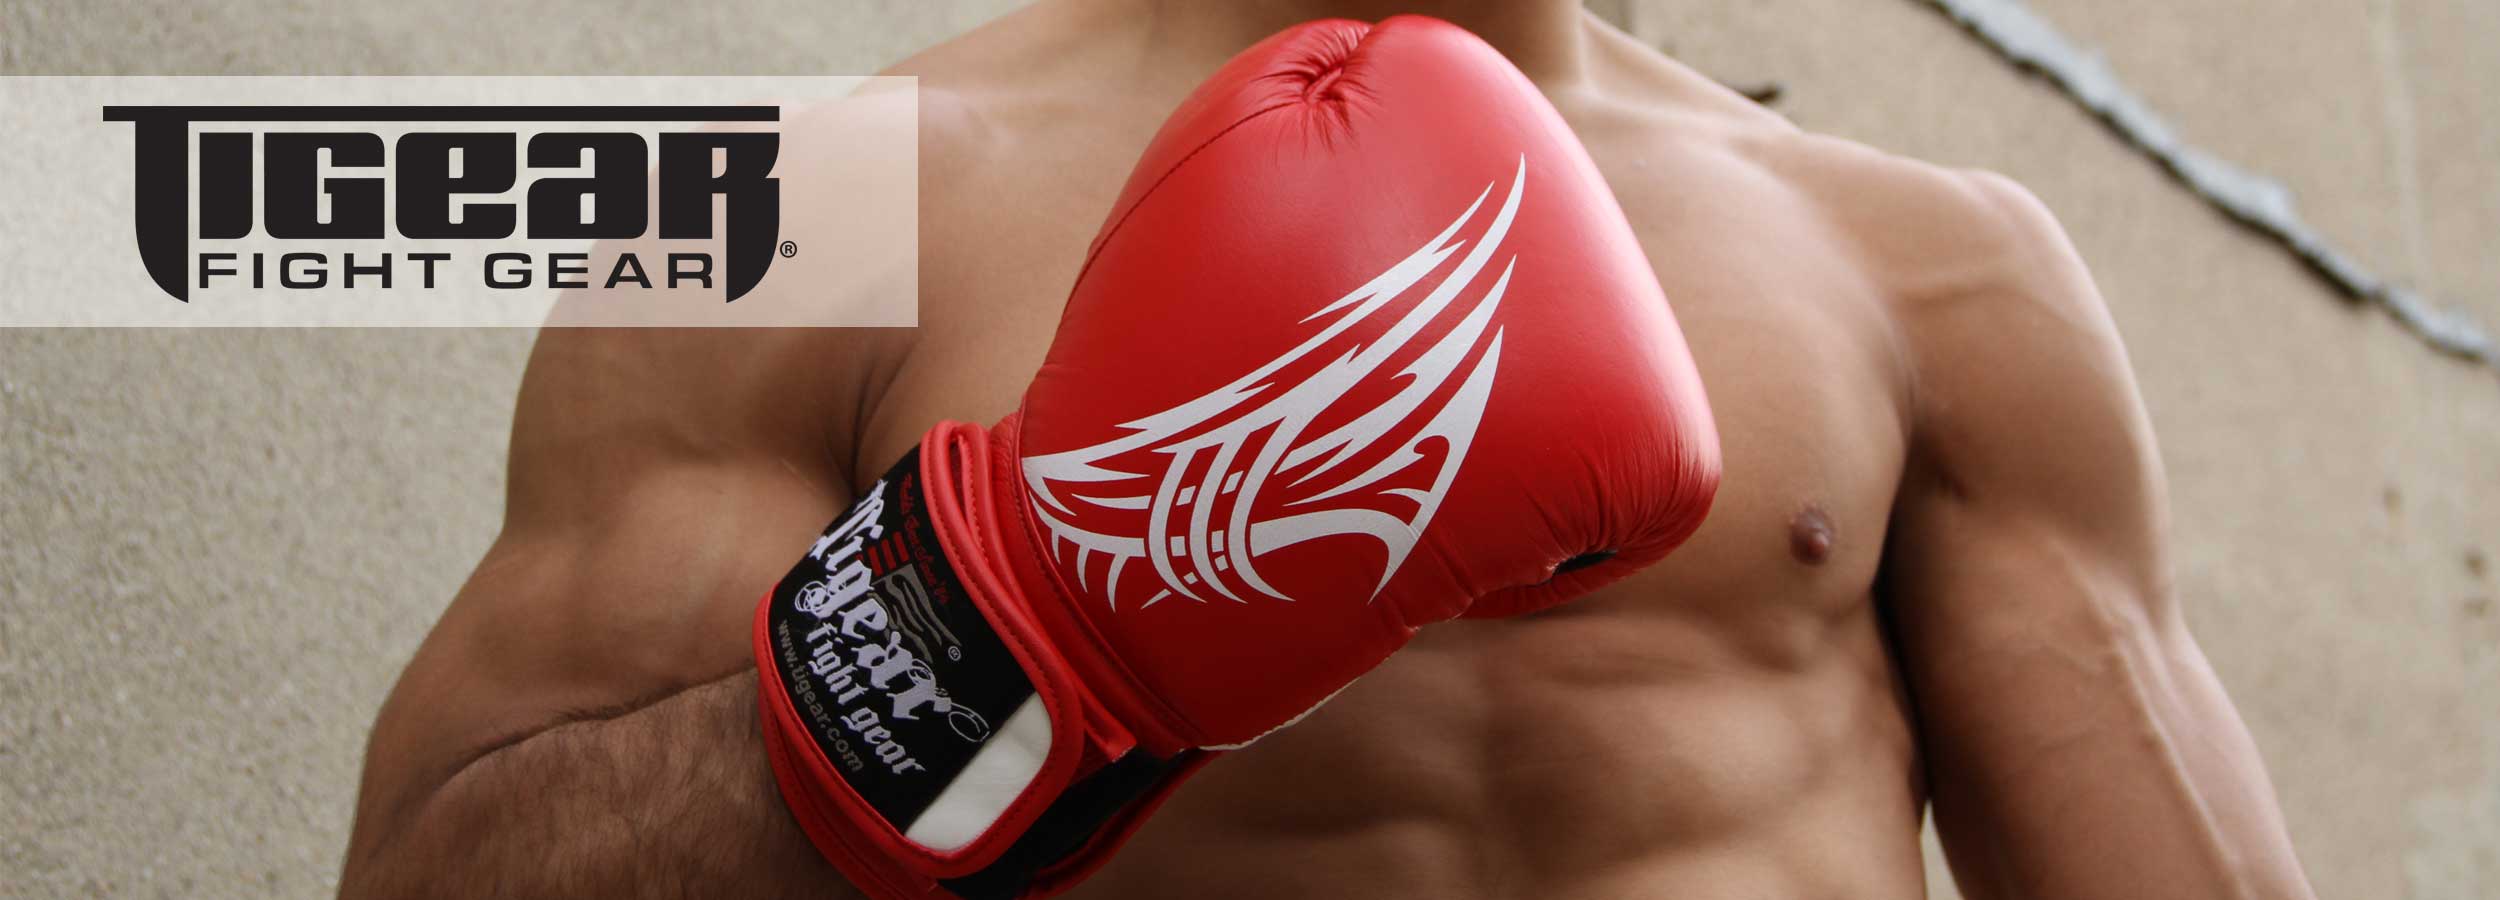 Tigear Fight Gear MMA